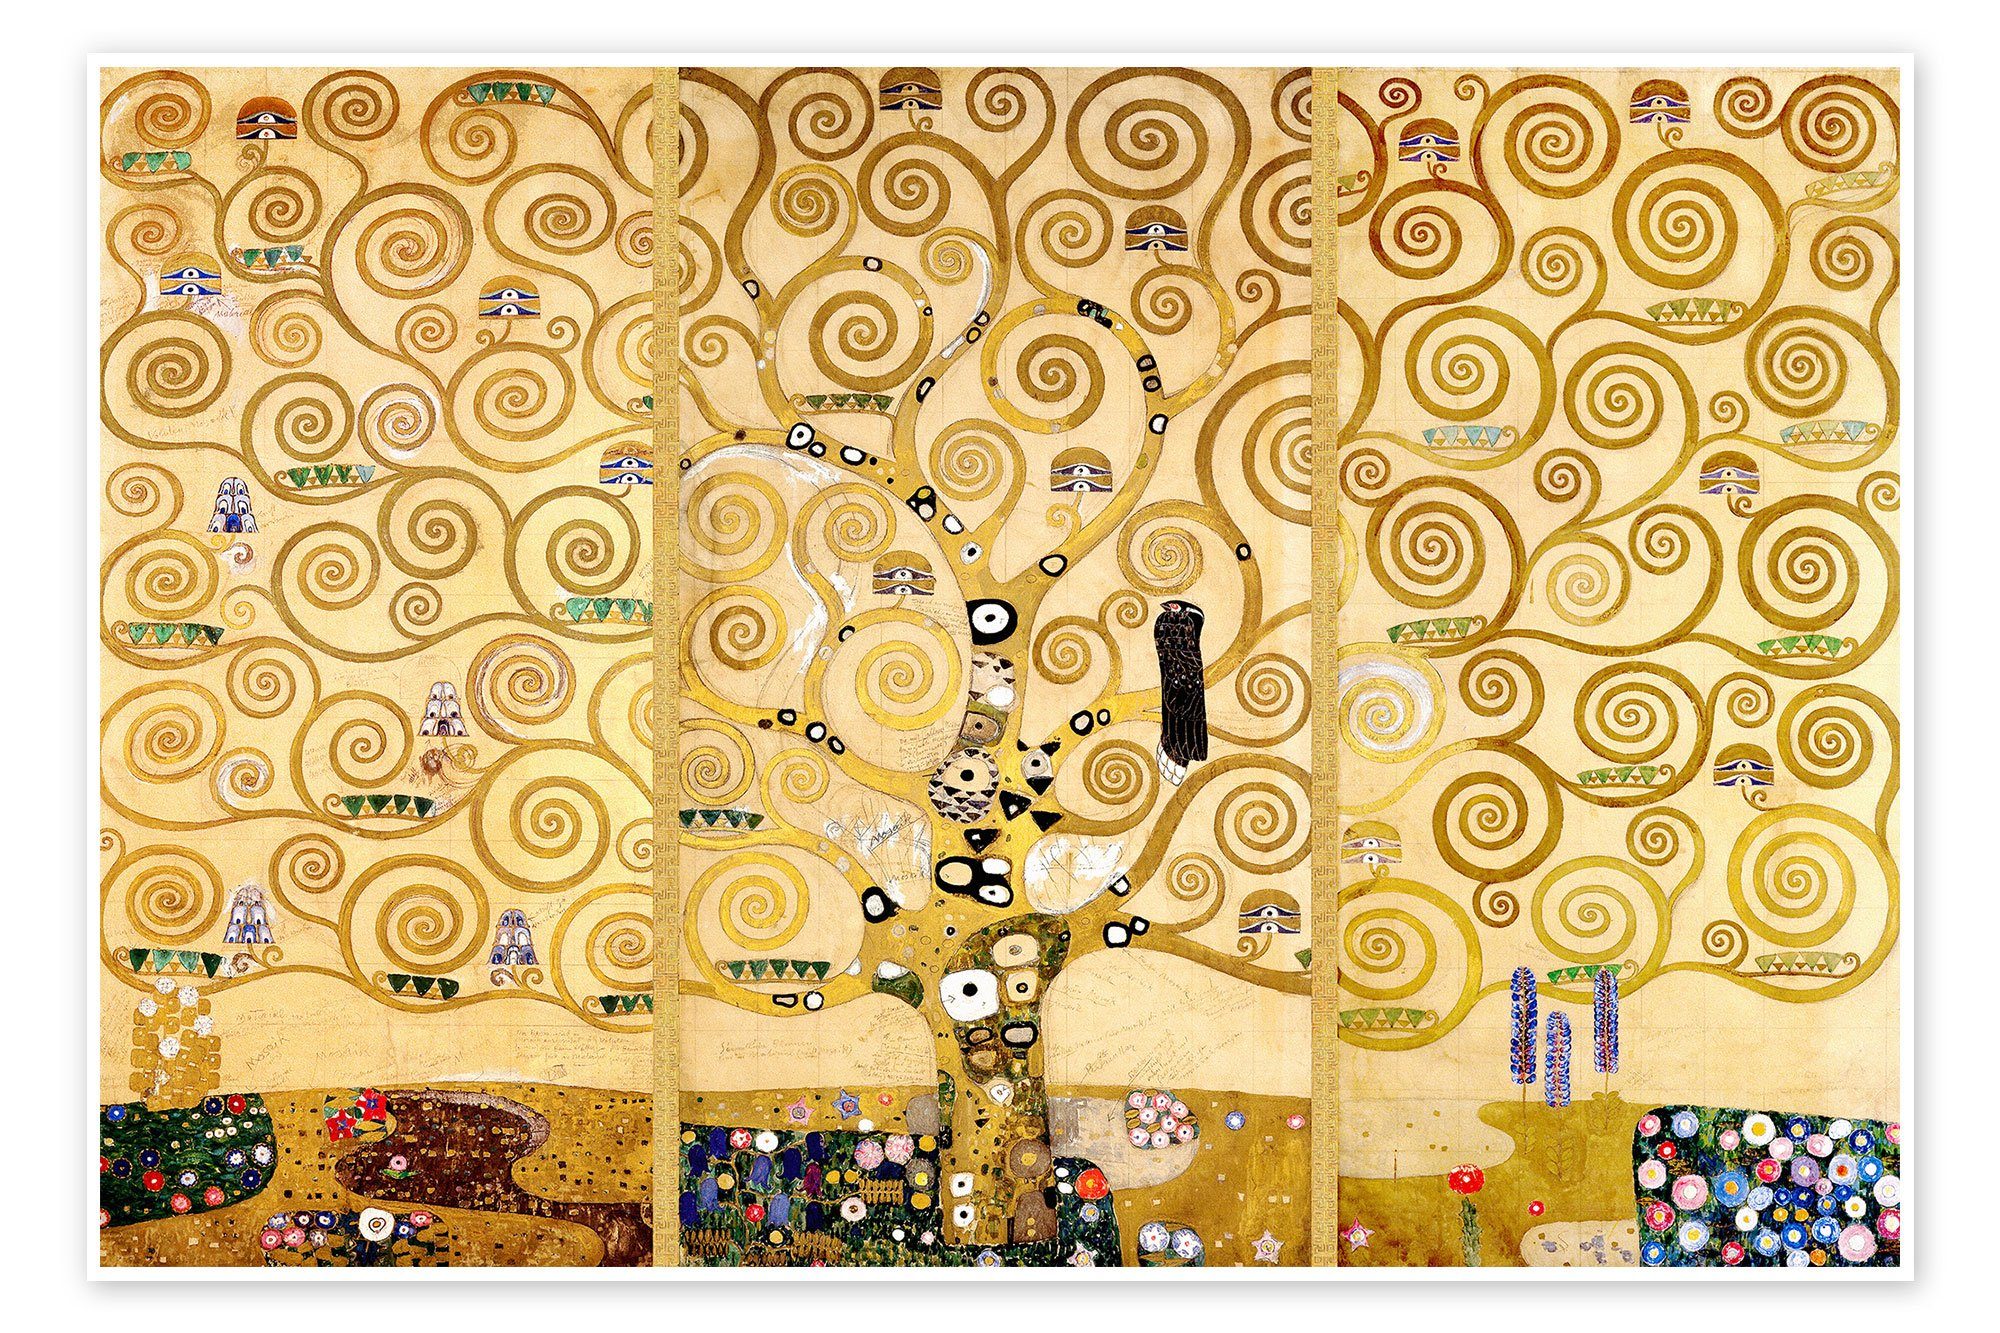 Posterlounge Poster Gustav Klimt, Der Lebensbaum, Wohnzimmer Malerei